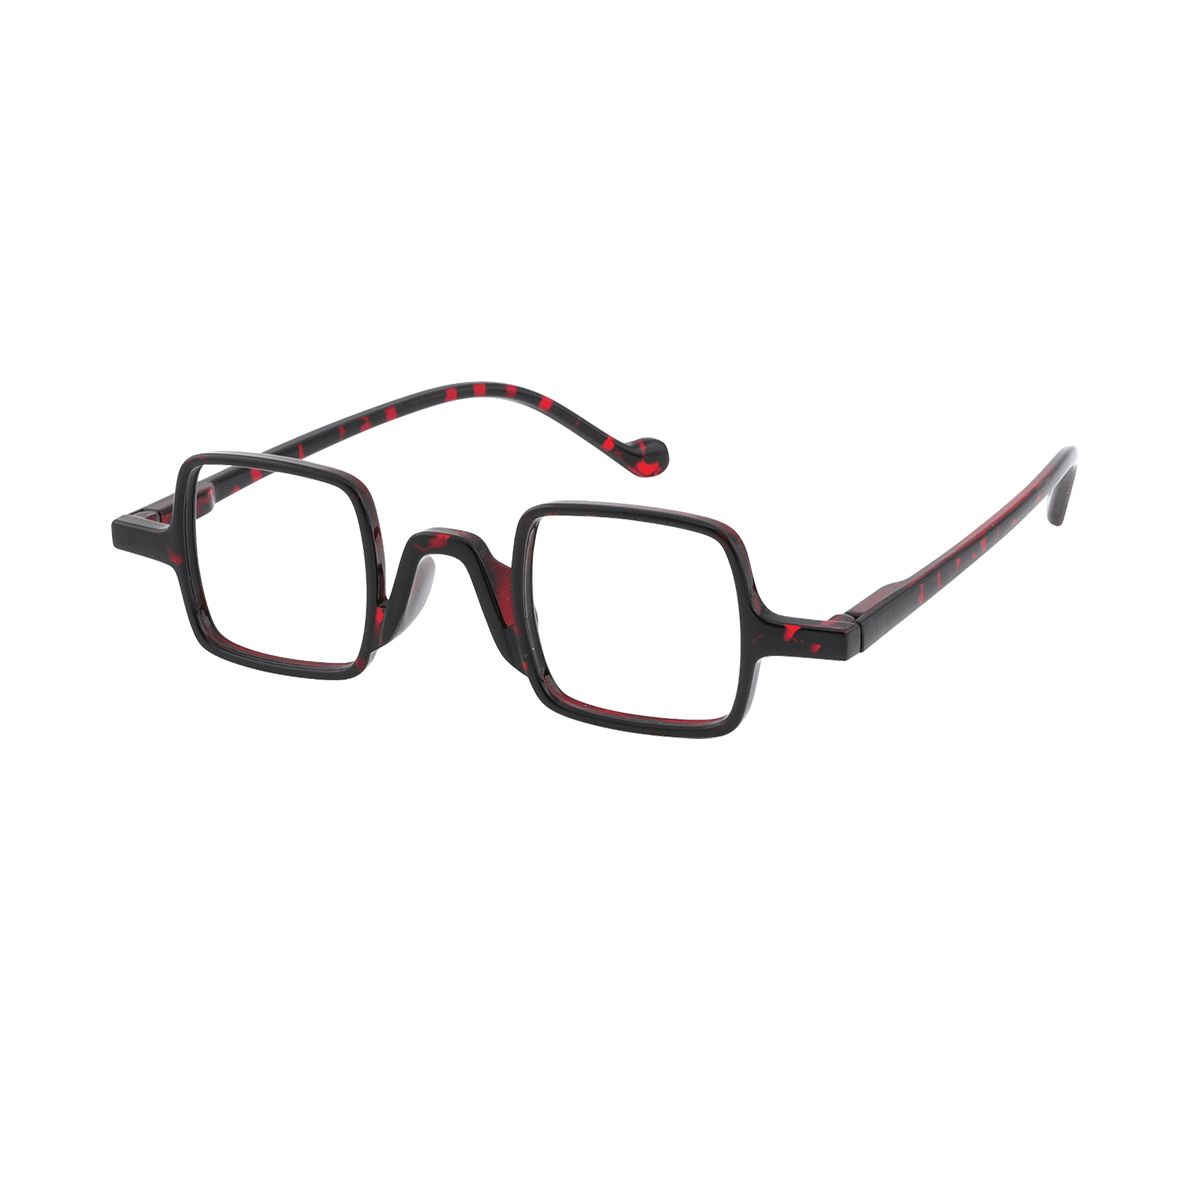 Amphlet - Square Red-Demi Reading Glasses for Men & Women